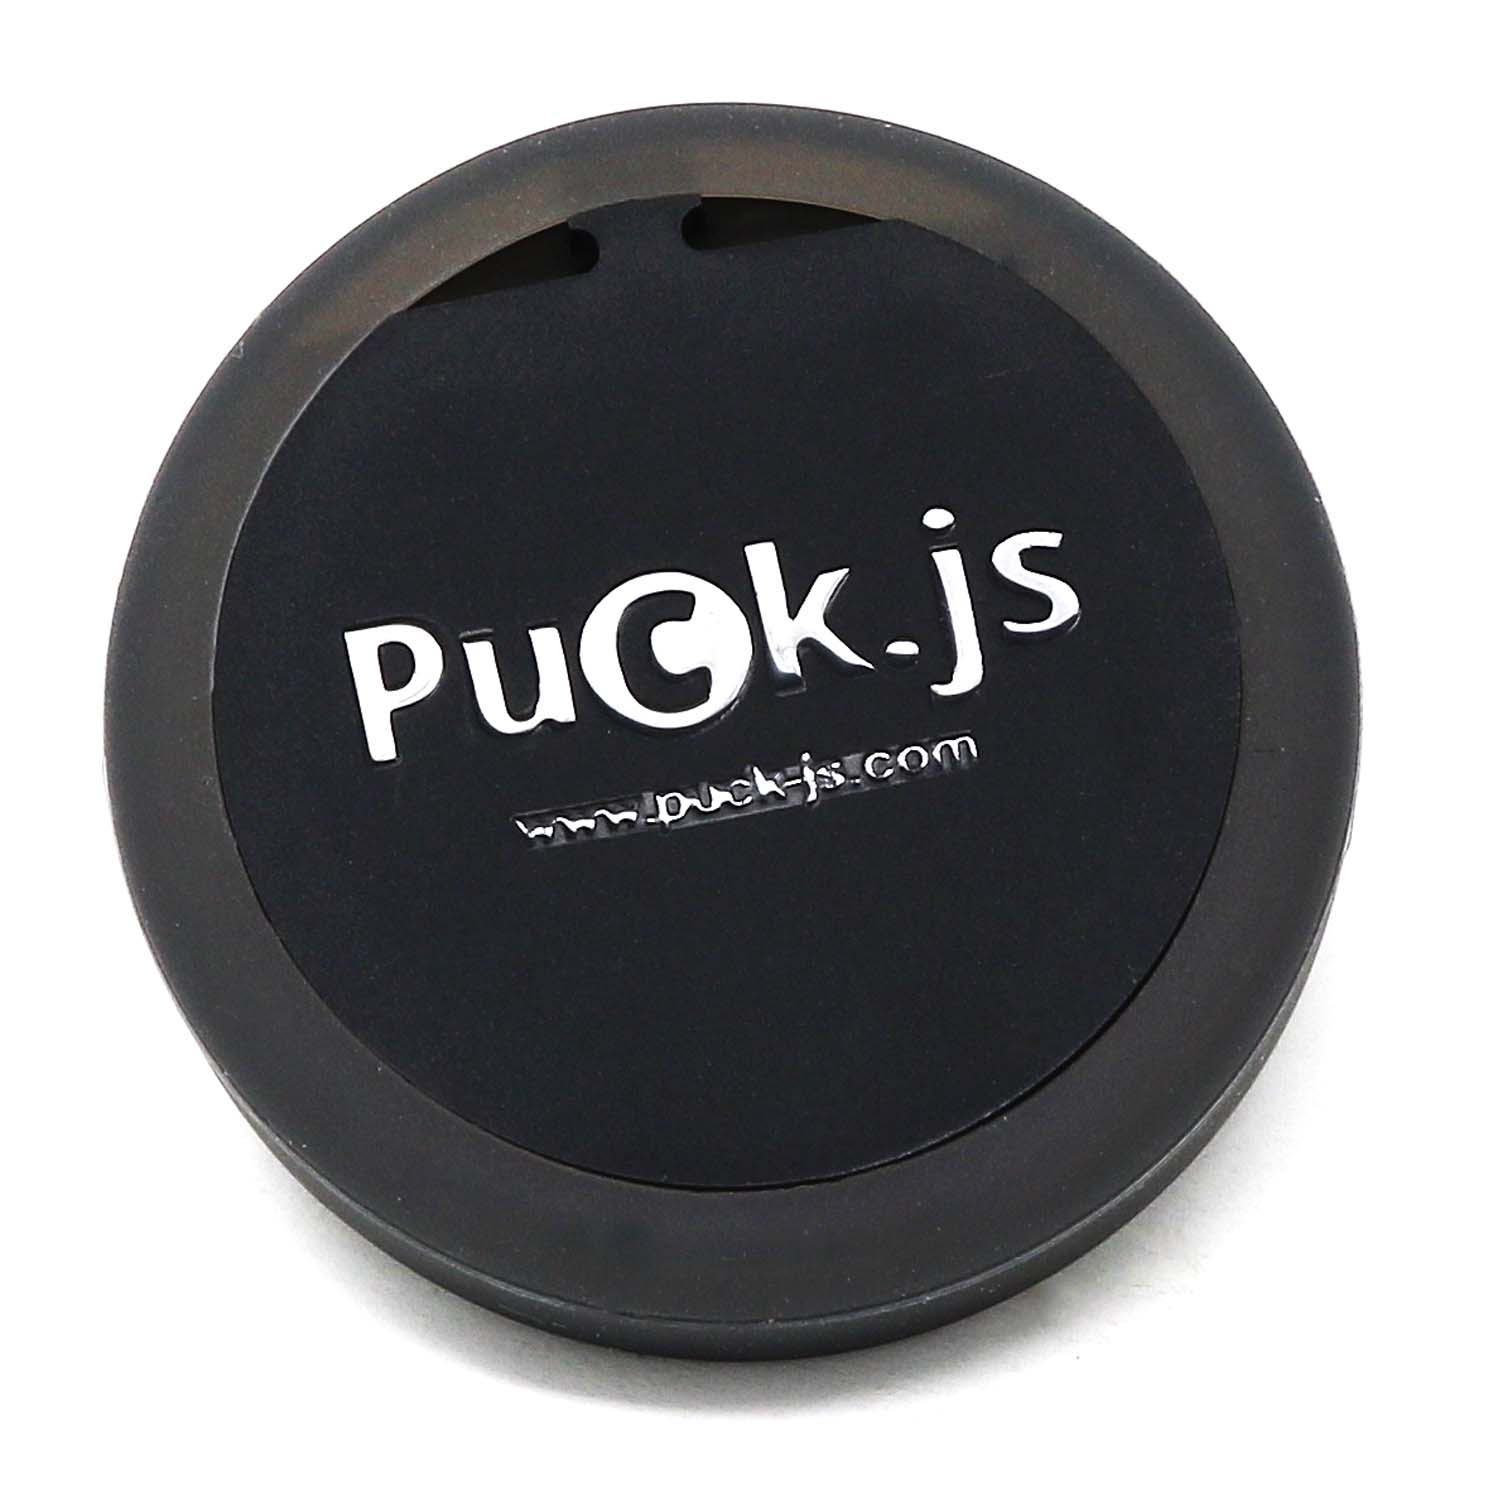 Espruino Puck.js v2.1 - The Pi Hut